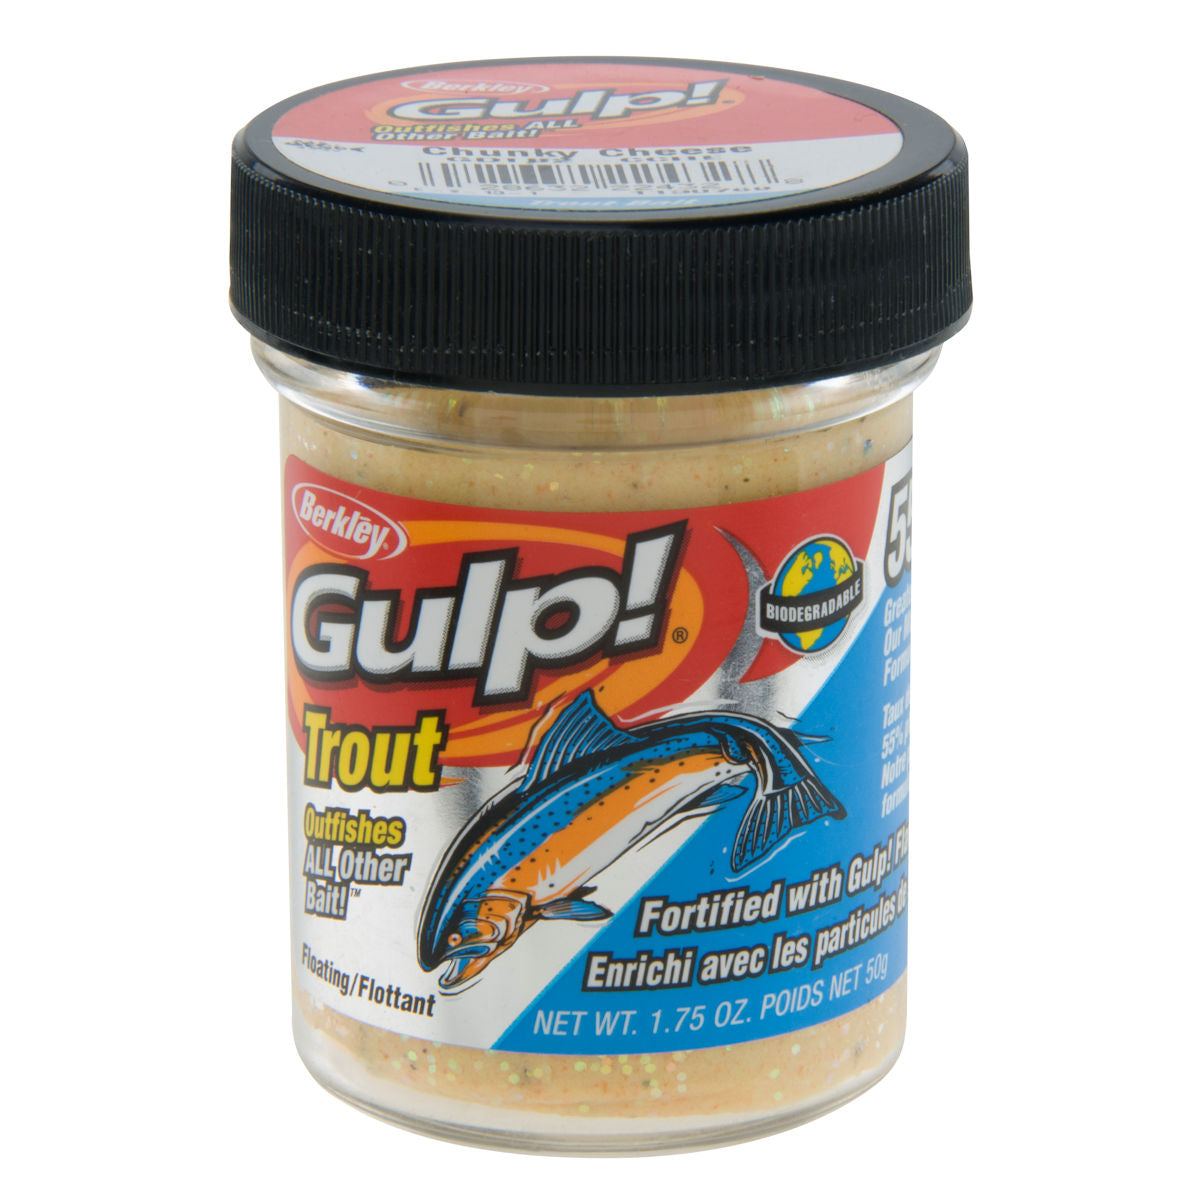 Gulp! Trout Dough_Chunky Cheese Original